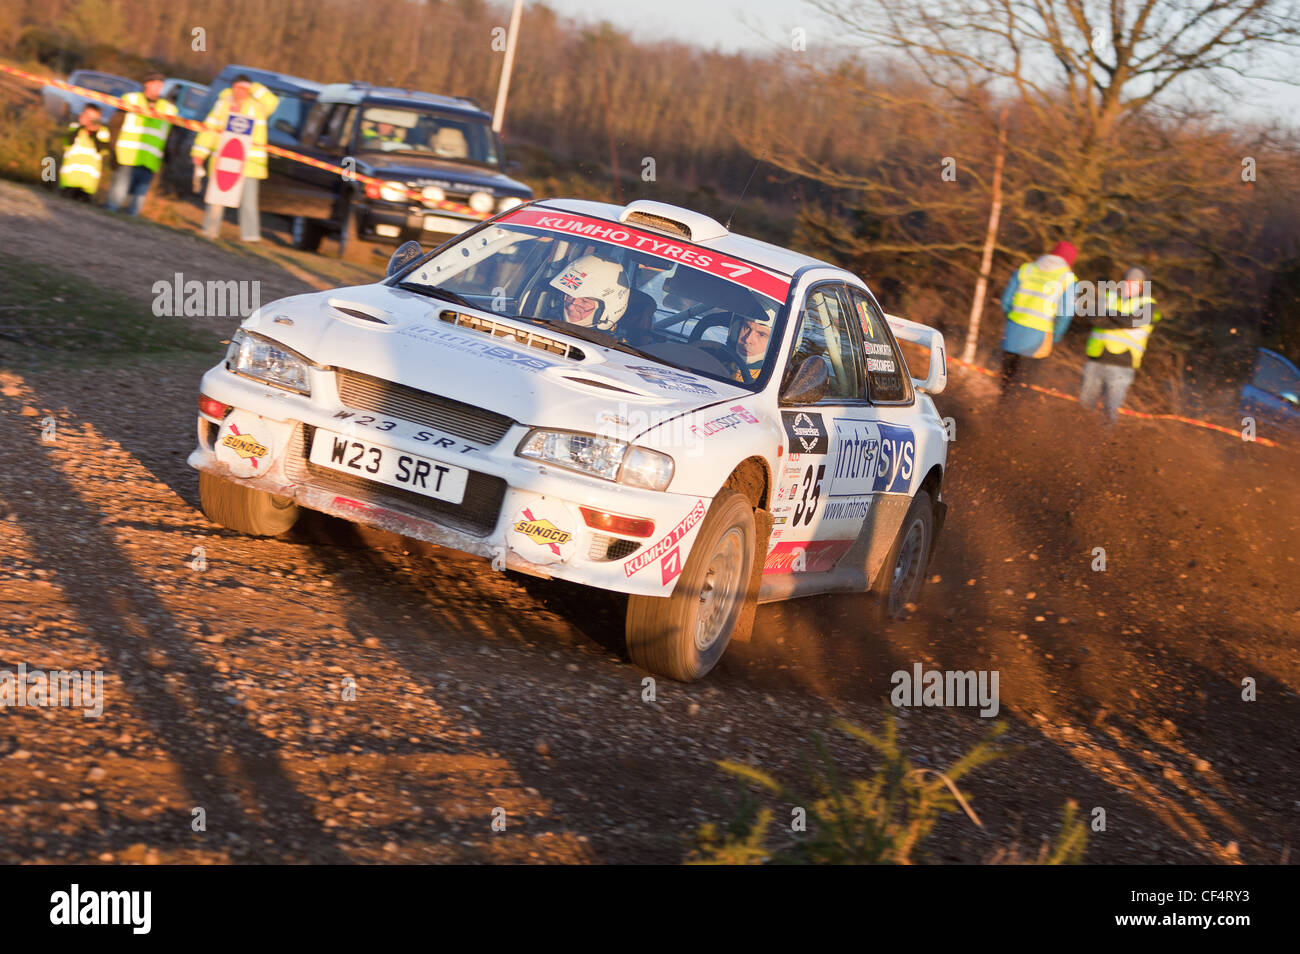 Eventuale National Class vincitore Roger Duckworth nella sua Subaru Impreza ex-works WRC auto Foto Stock